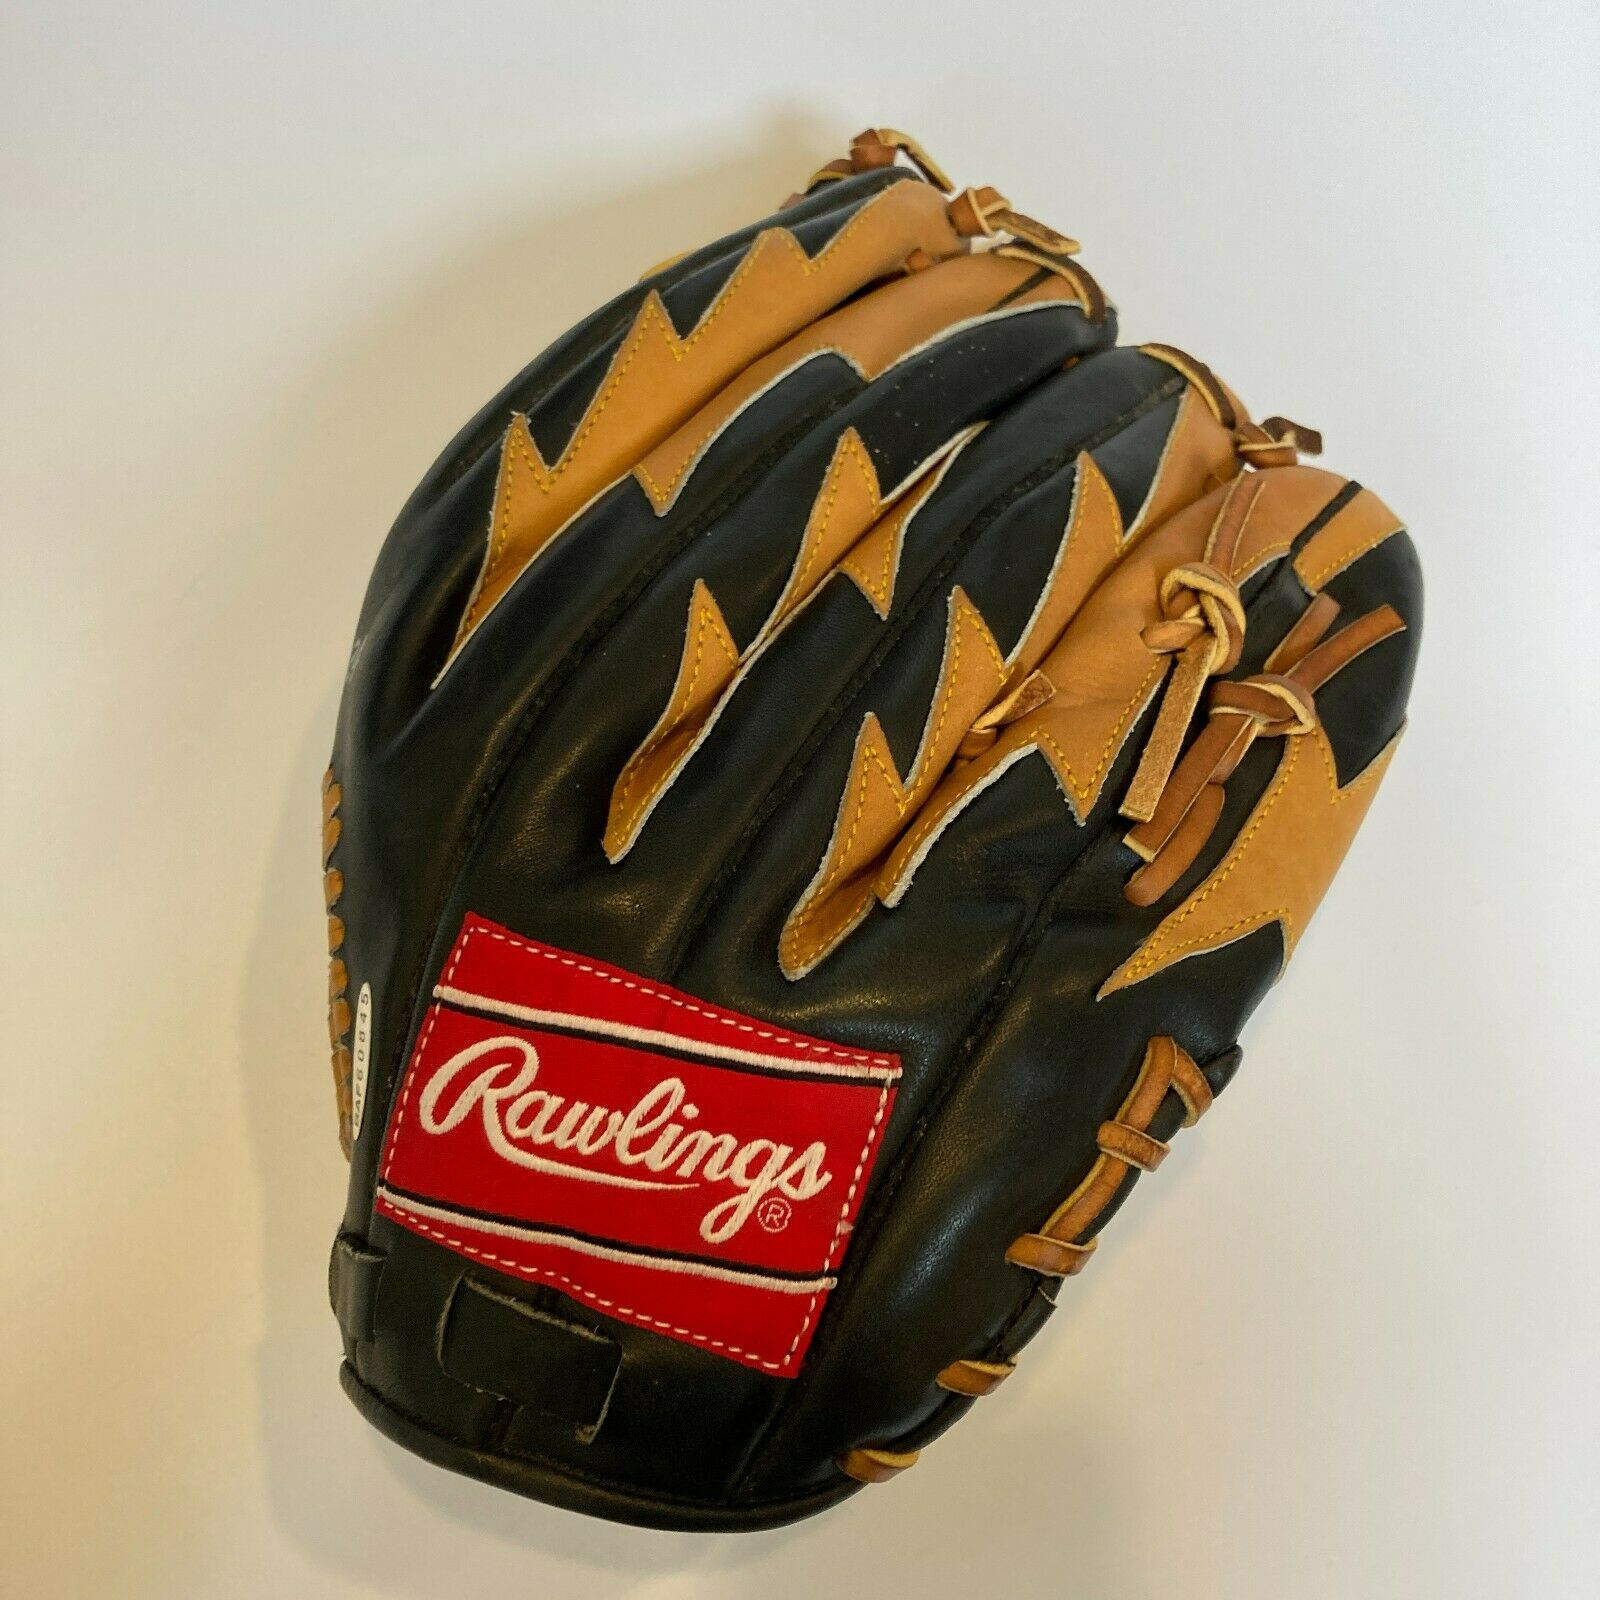 Ken Griffey Jr. Signed Game Model Baseball Glove #4/124 With UDA